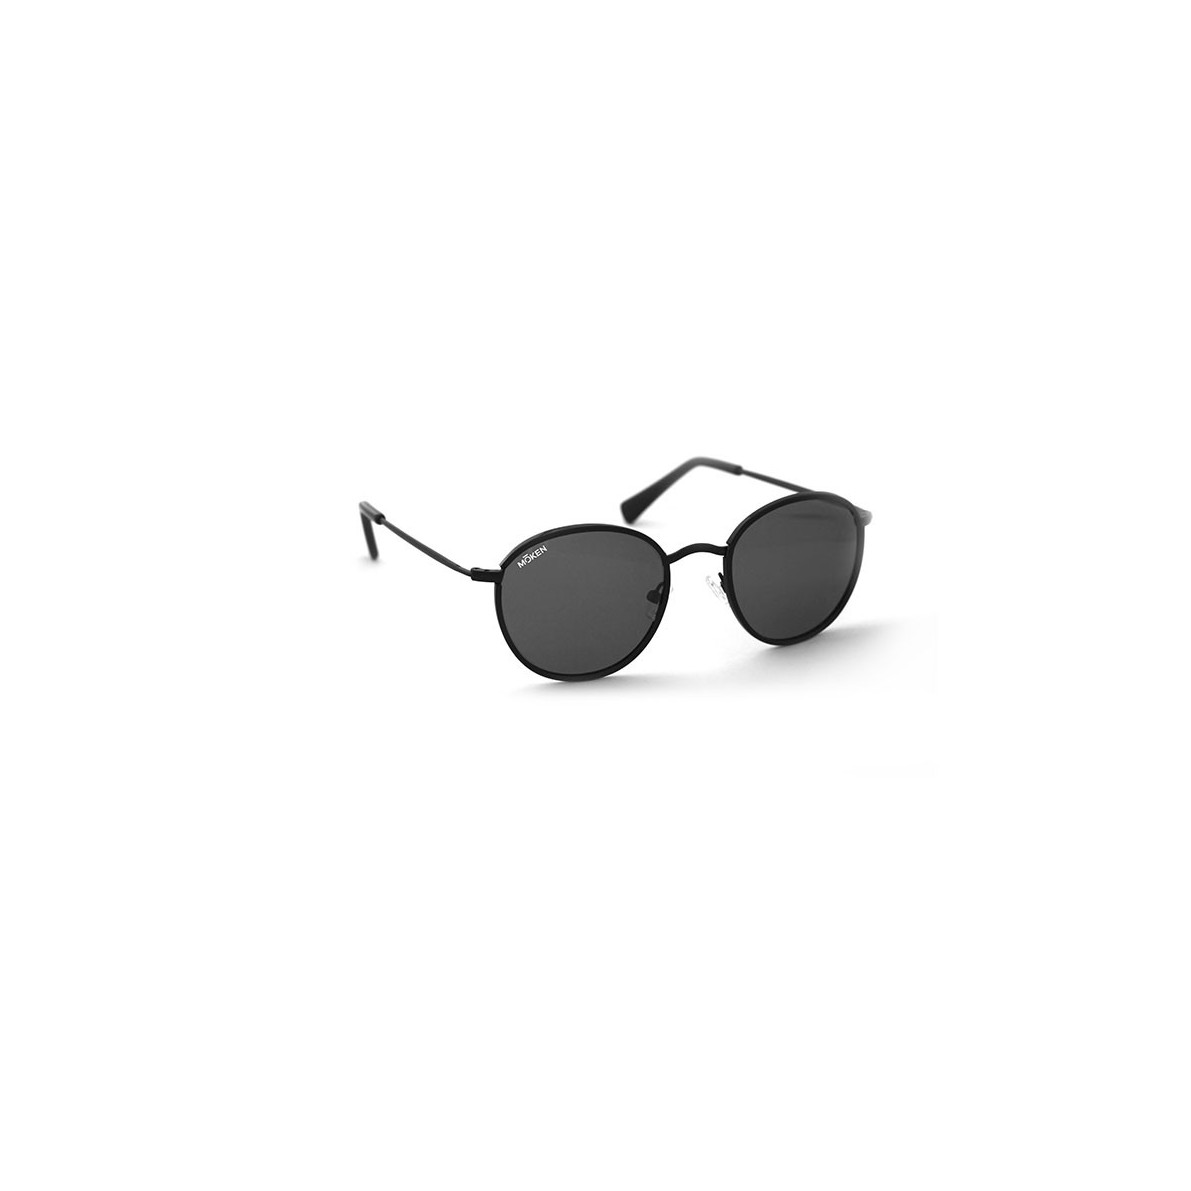 Sonnenbrille Modell: Purplehaze